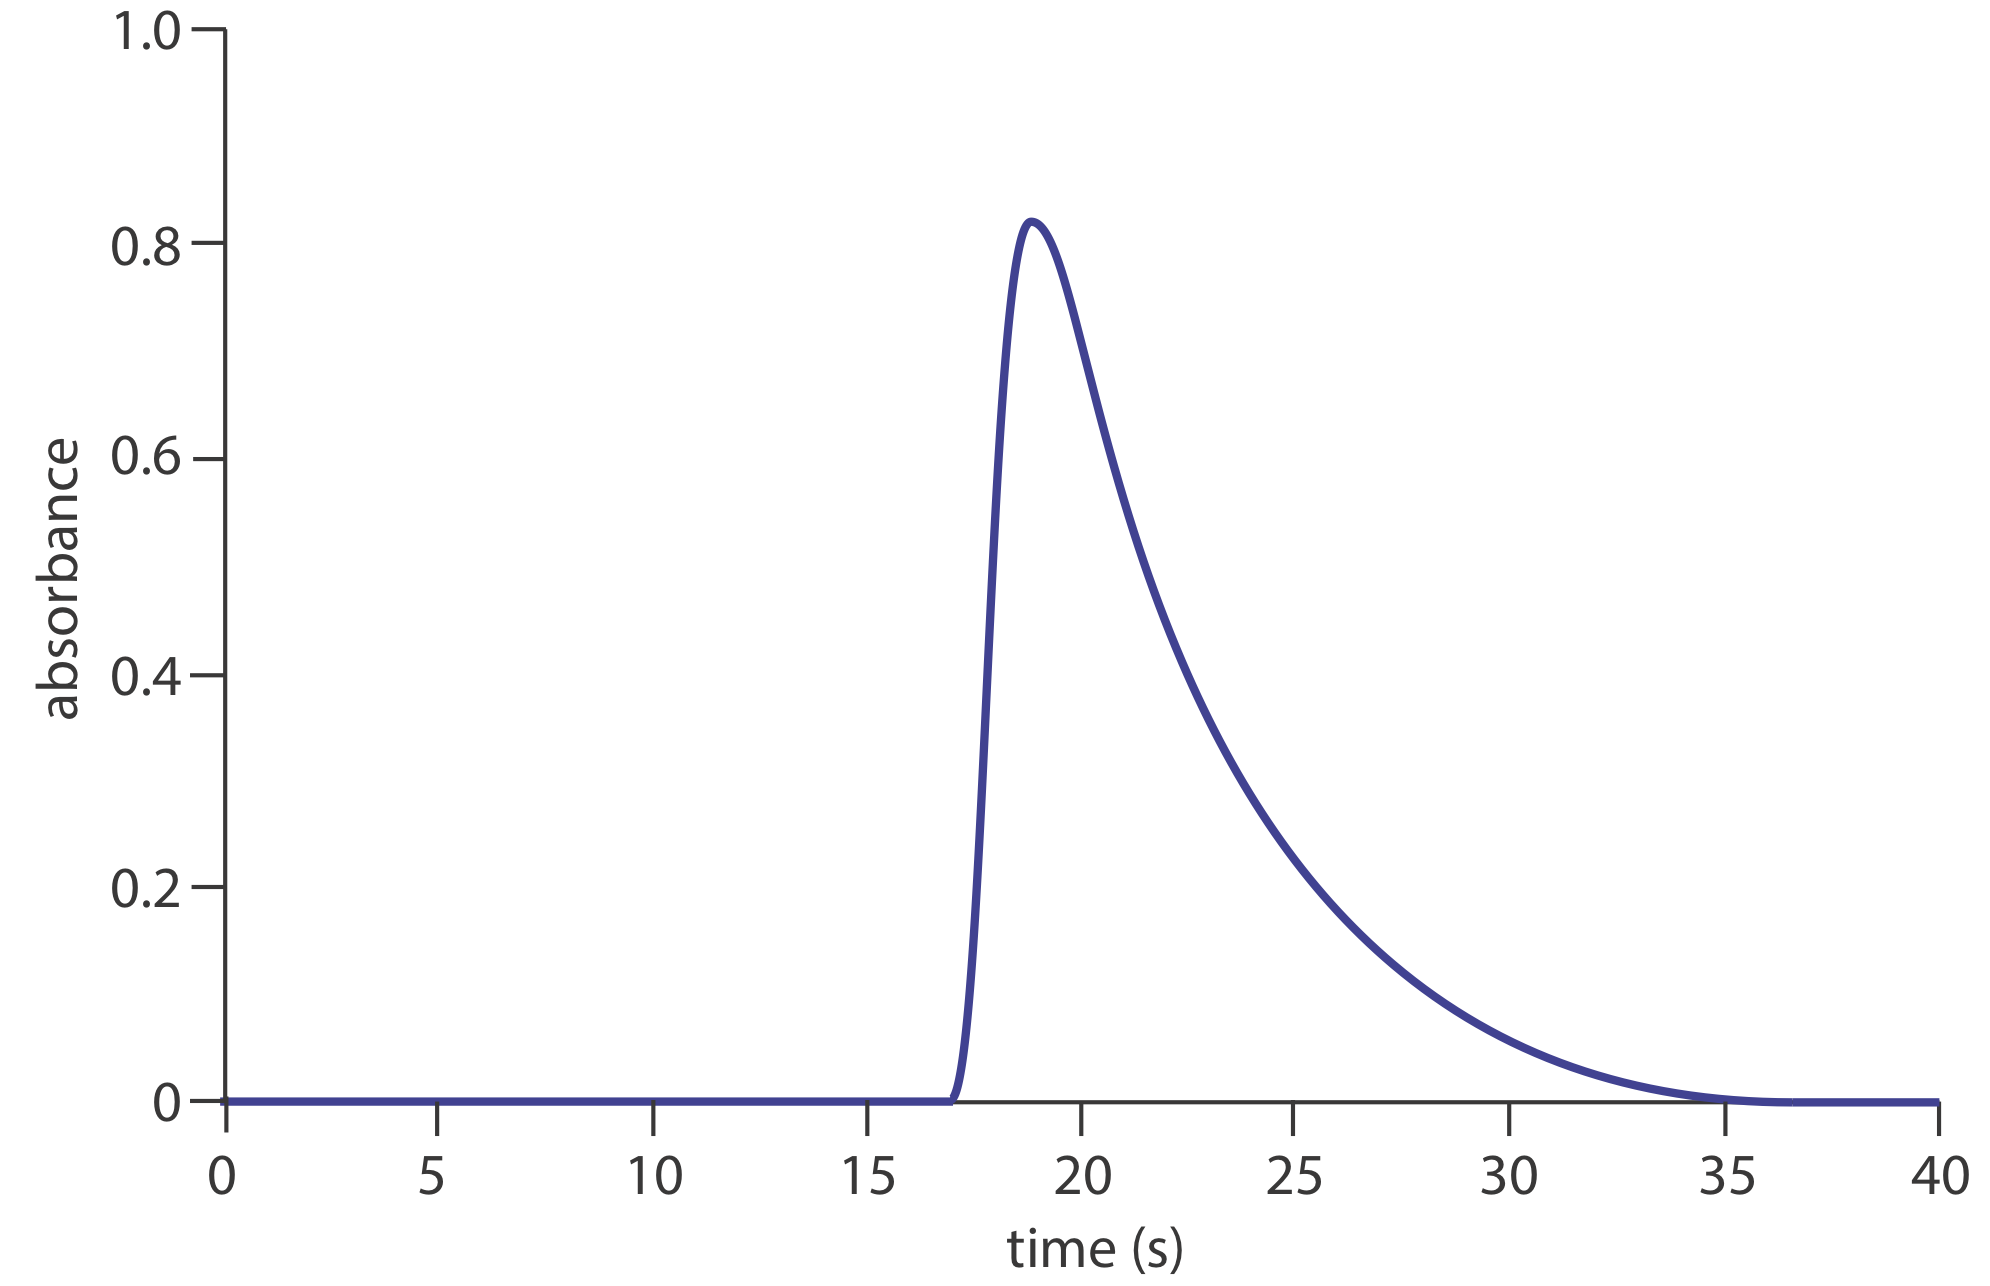 Gráfica de tiempo en segundos versus absorbancia. Se produce un pico en la absorbancia a los 20 segundos con un valor de 0.8.